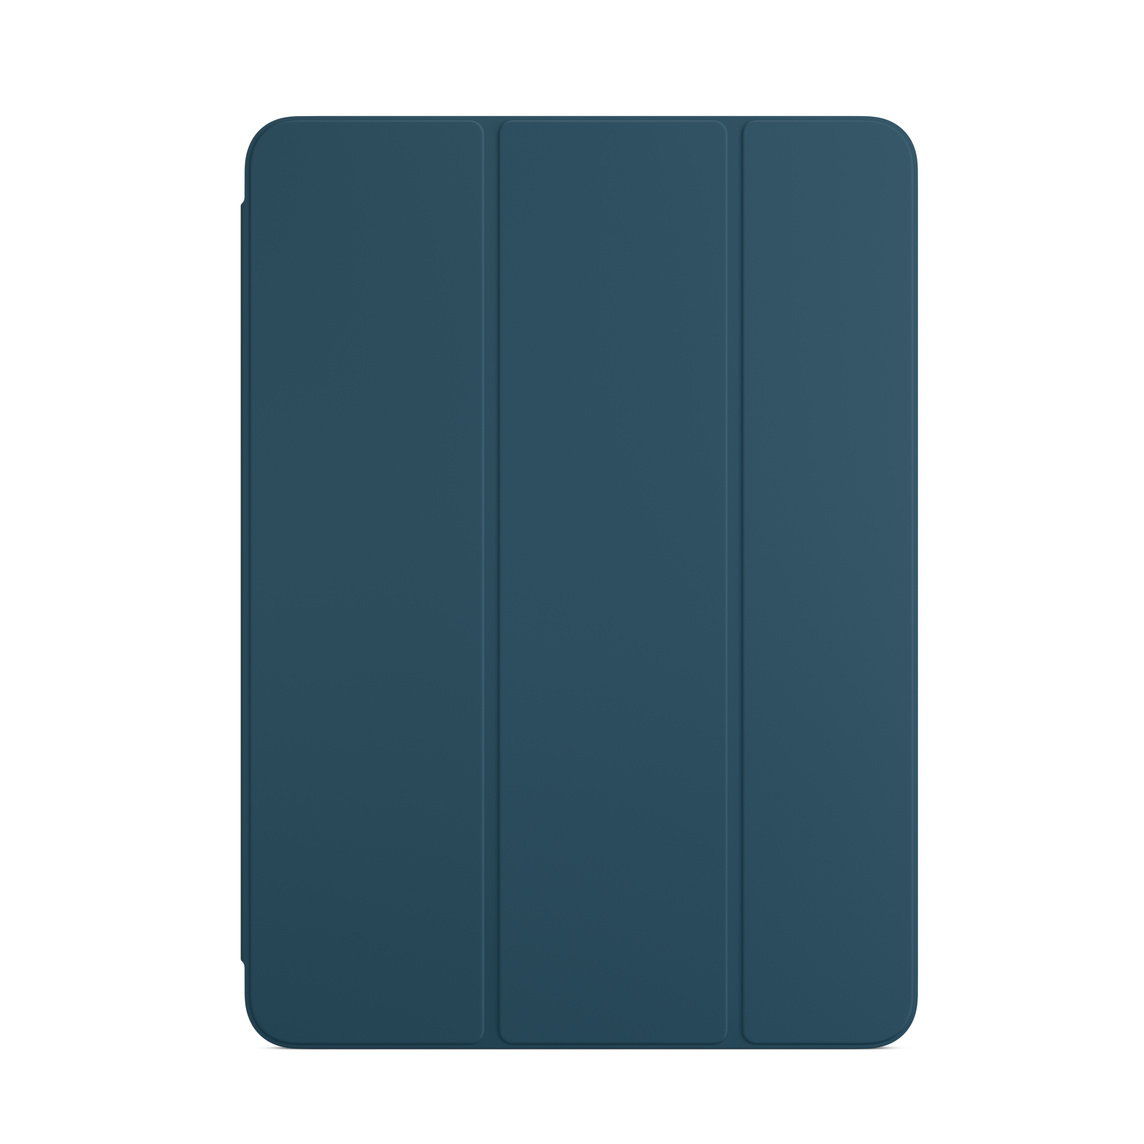 適用於 iPad Air 的海藍色智慧型摺套。